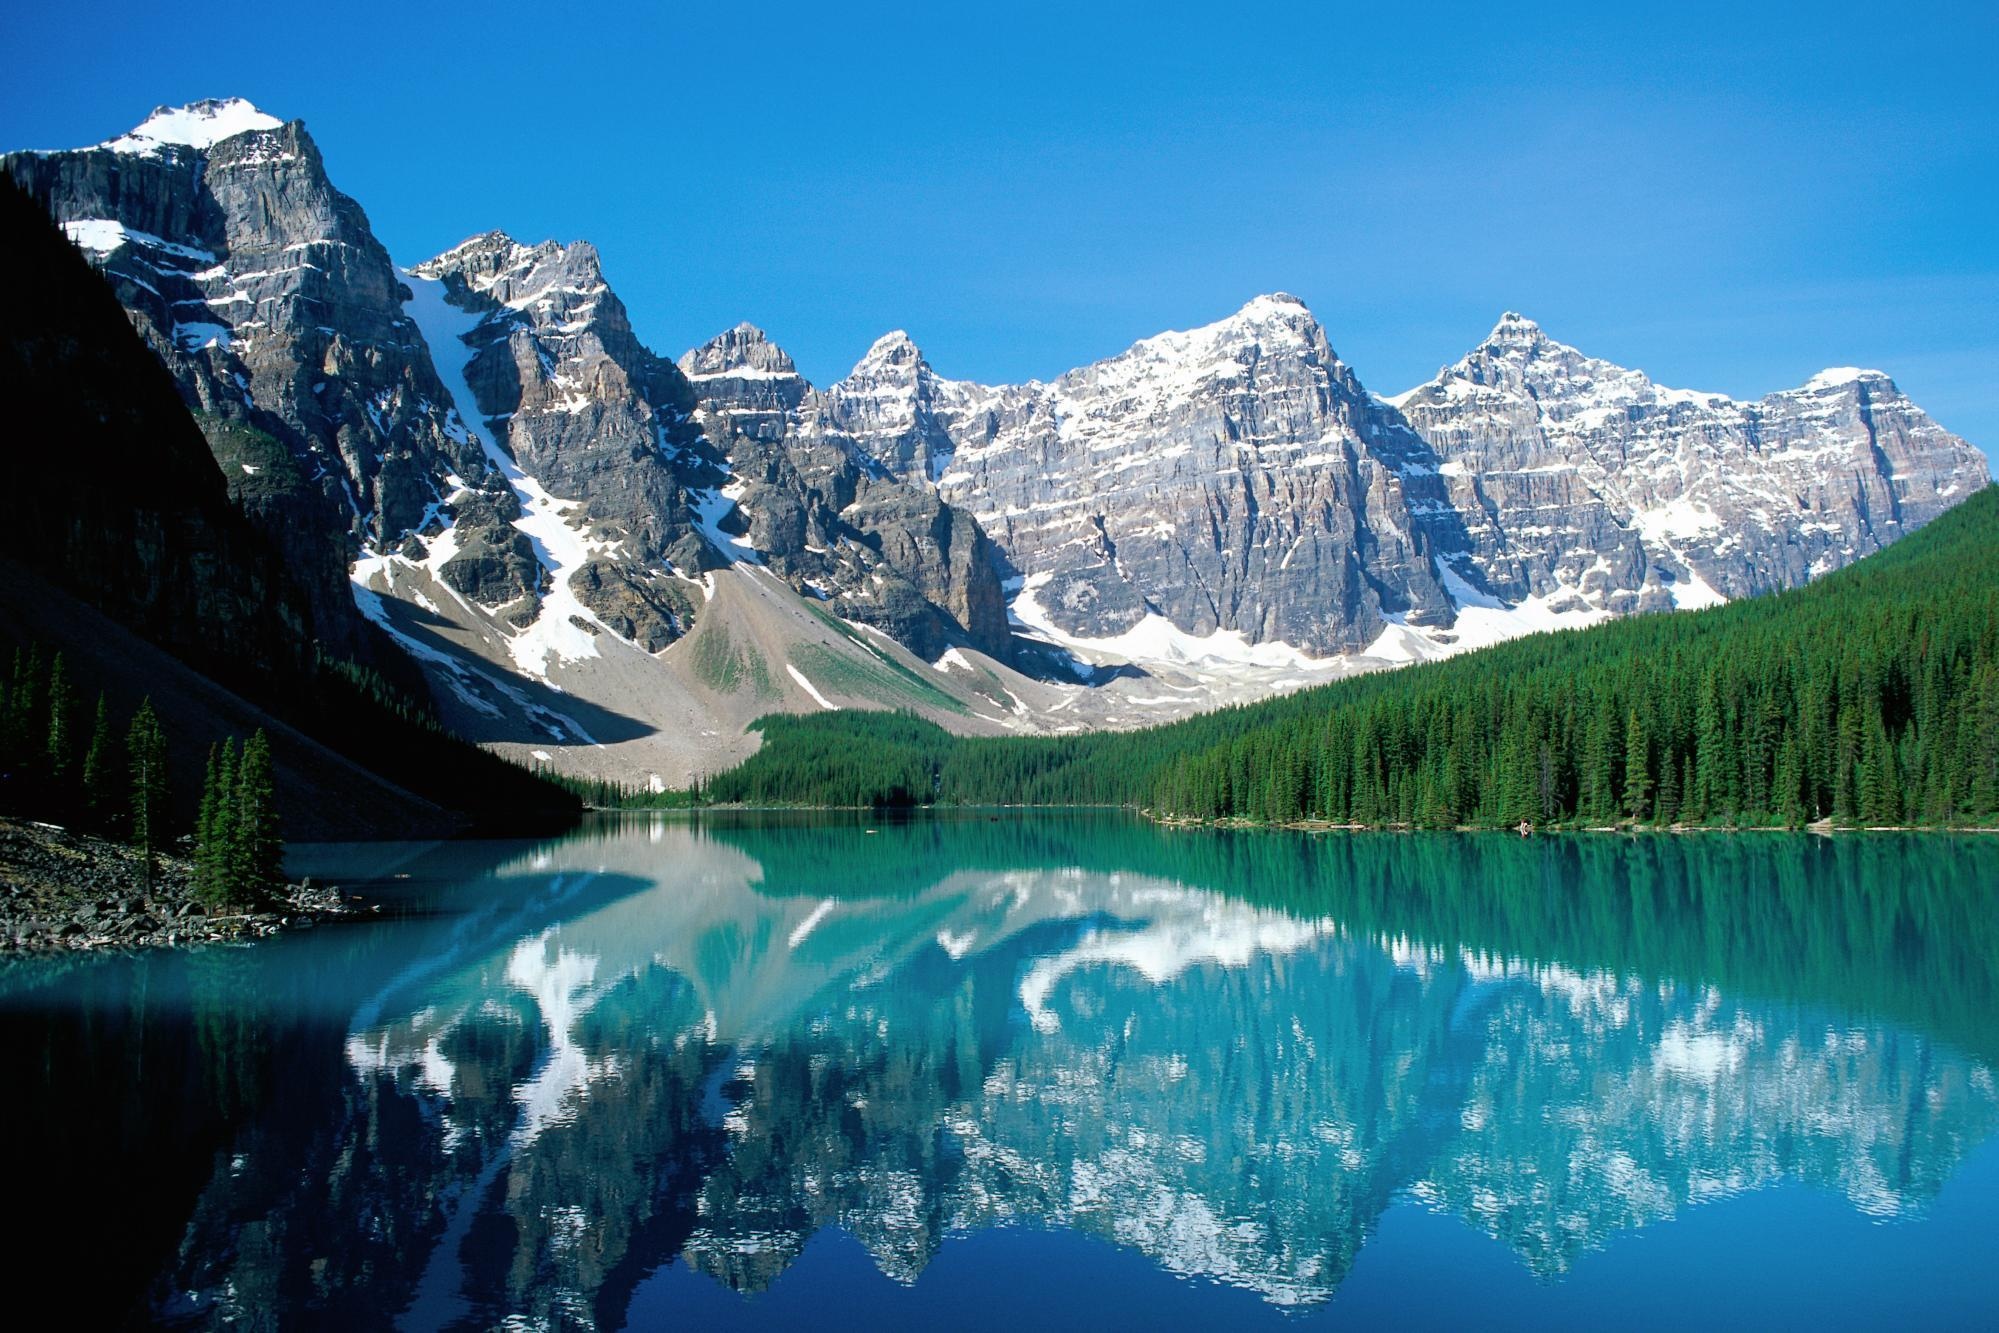 Canada lakes. Озеро Морейн в Канаде. Озеро Банф Канада. Озеро Морейн. Национальный парк Банф. Ледниковое озеро Морейн, Канада.